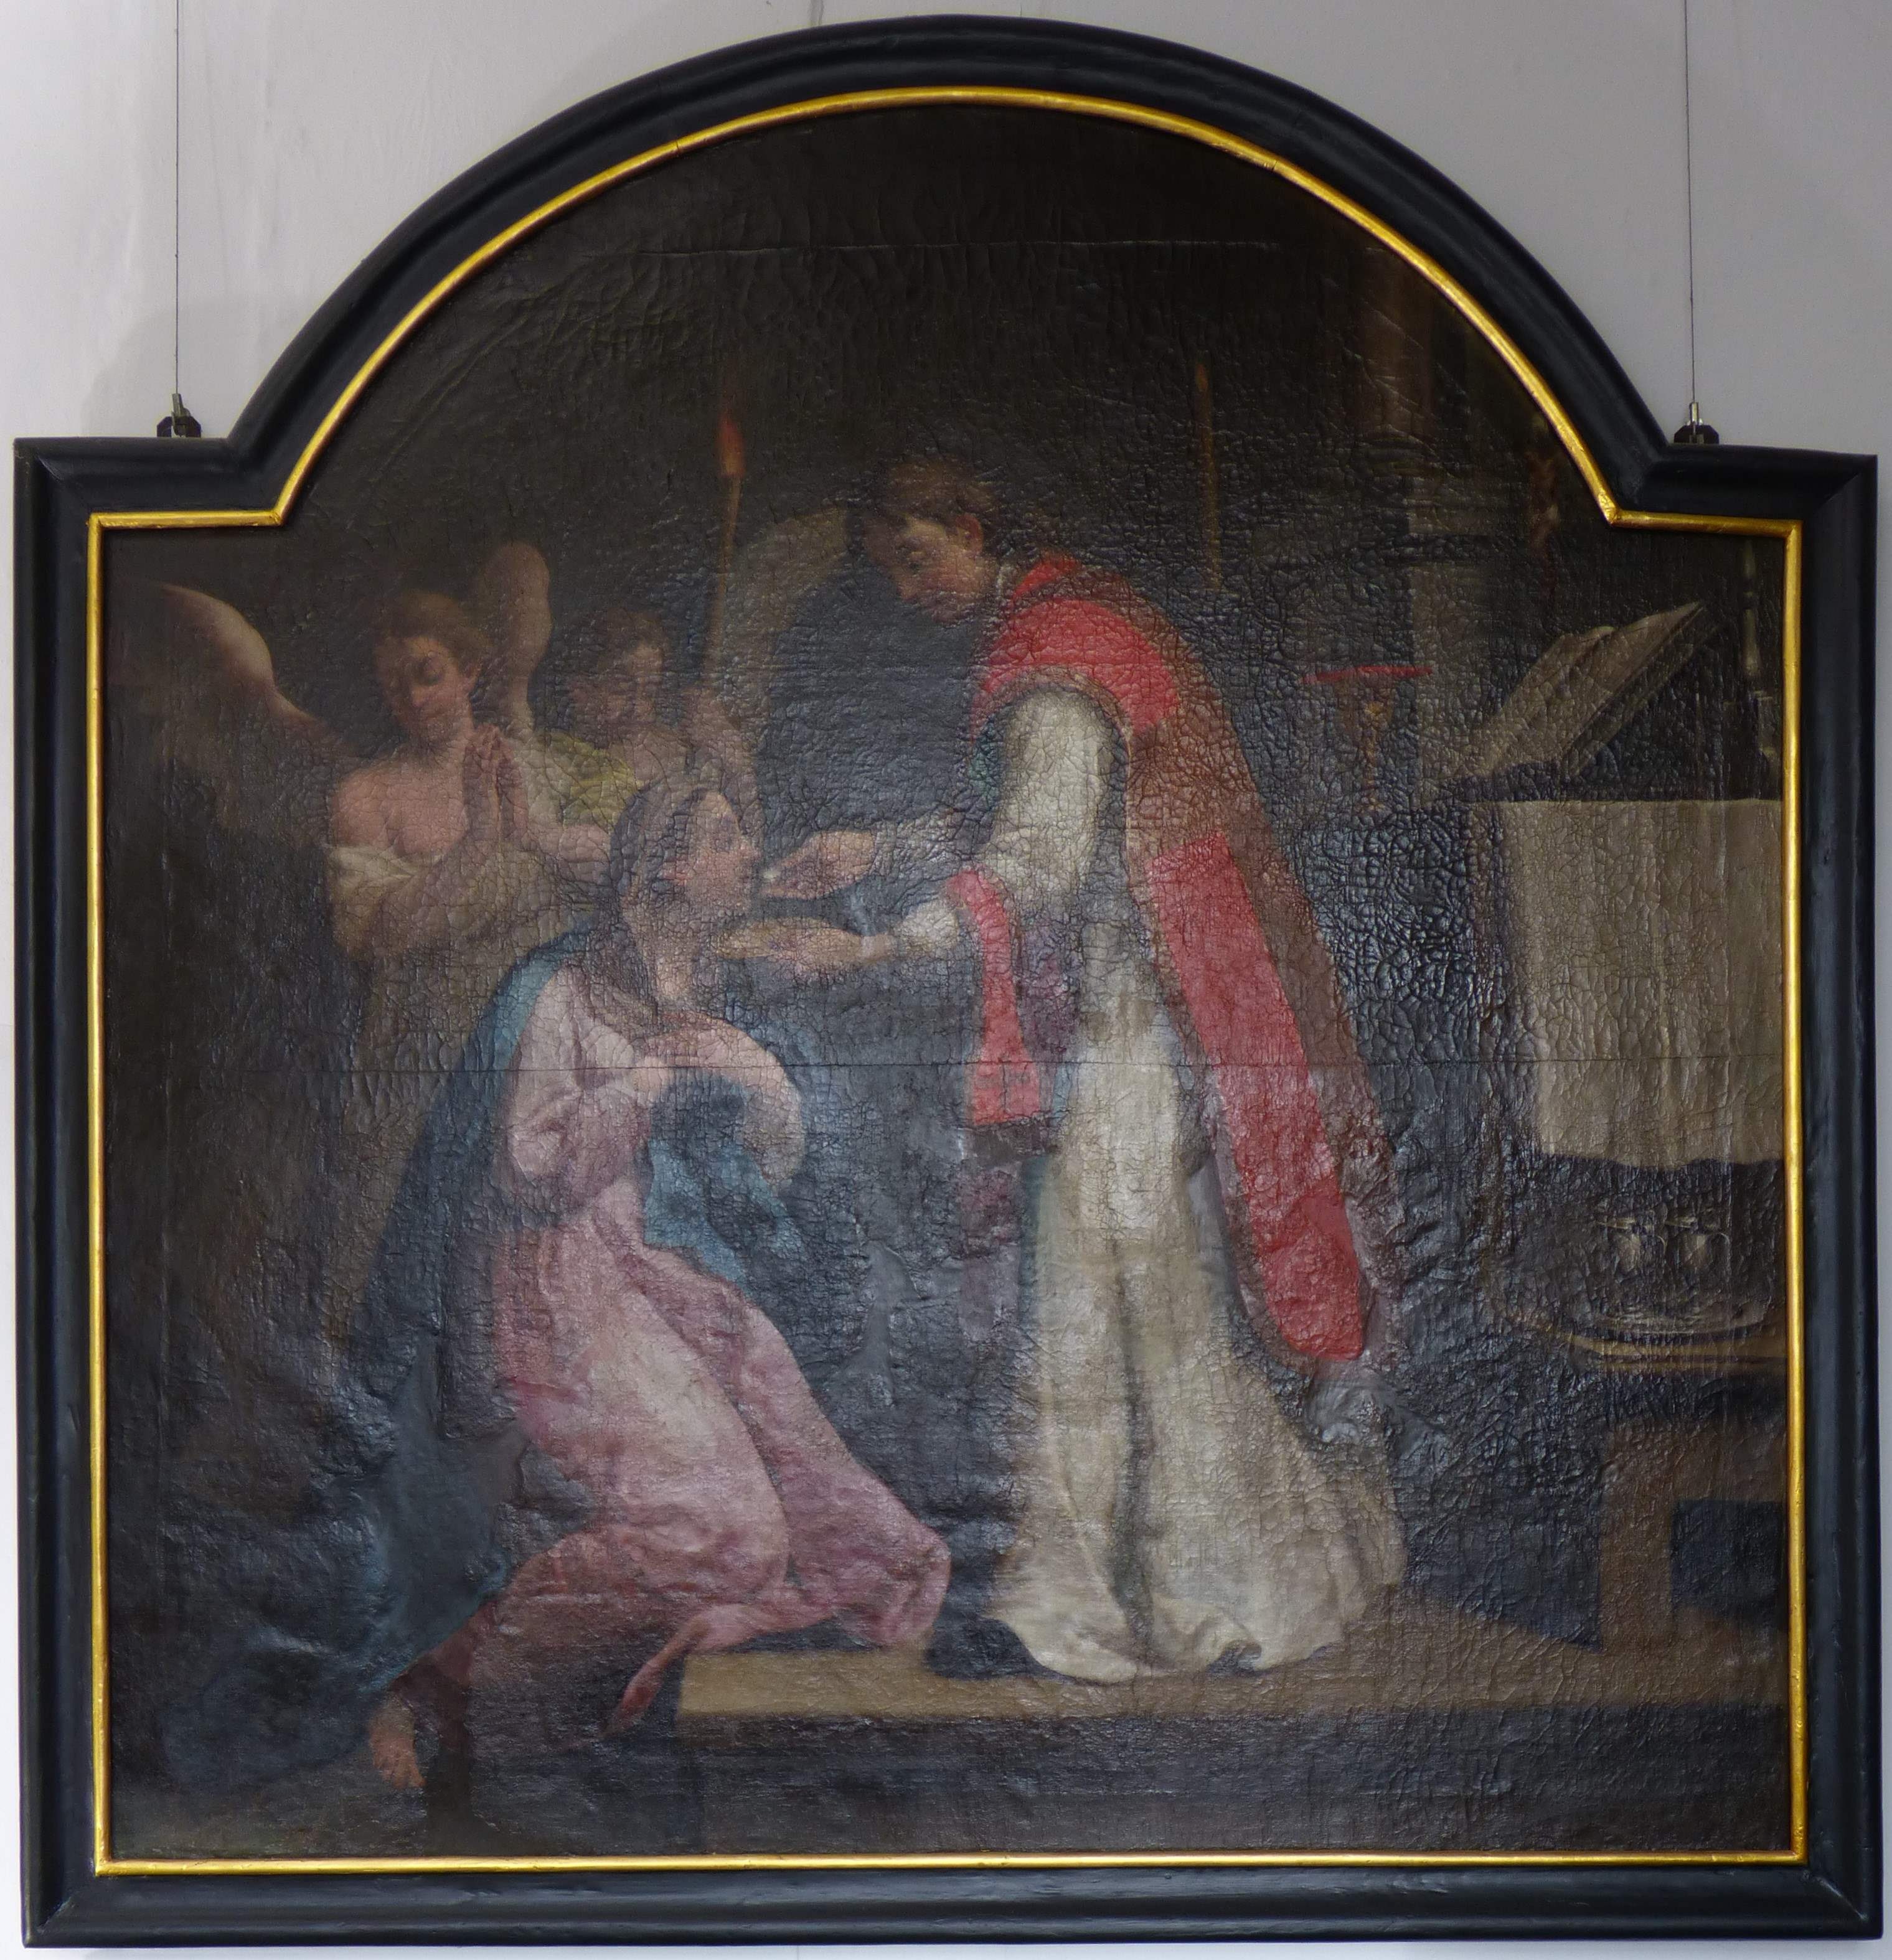 Gemälde aus der Hl.-Geist-Kapelle am Hospital von Geseke (Städt. Hellweg-Museum Geseke CC BY-NC-SA)